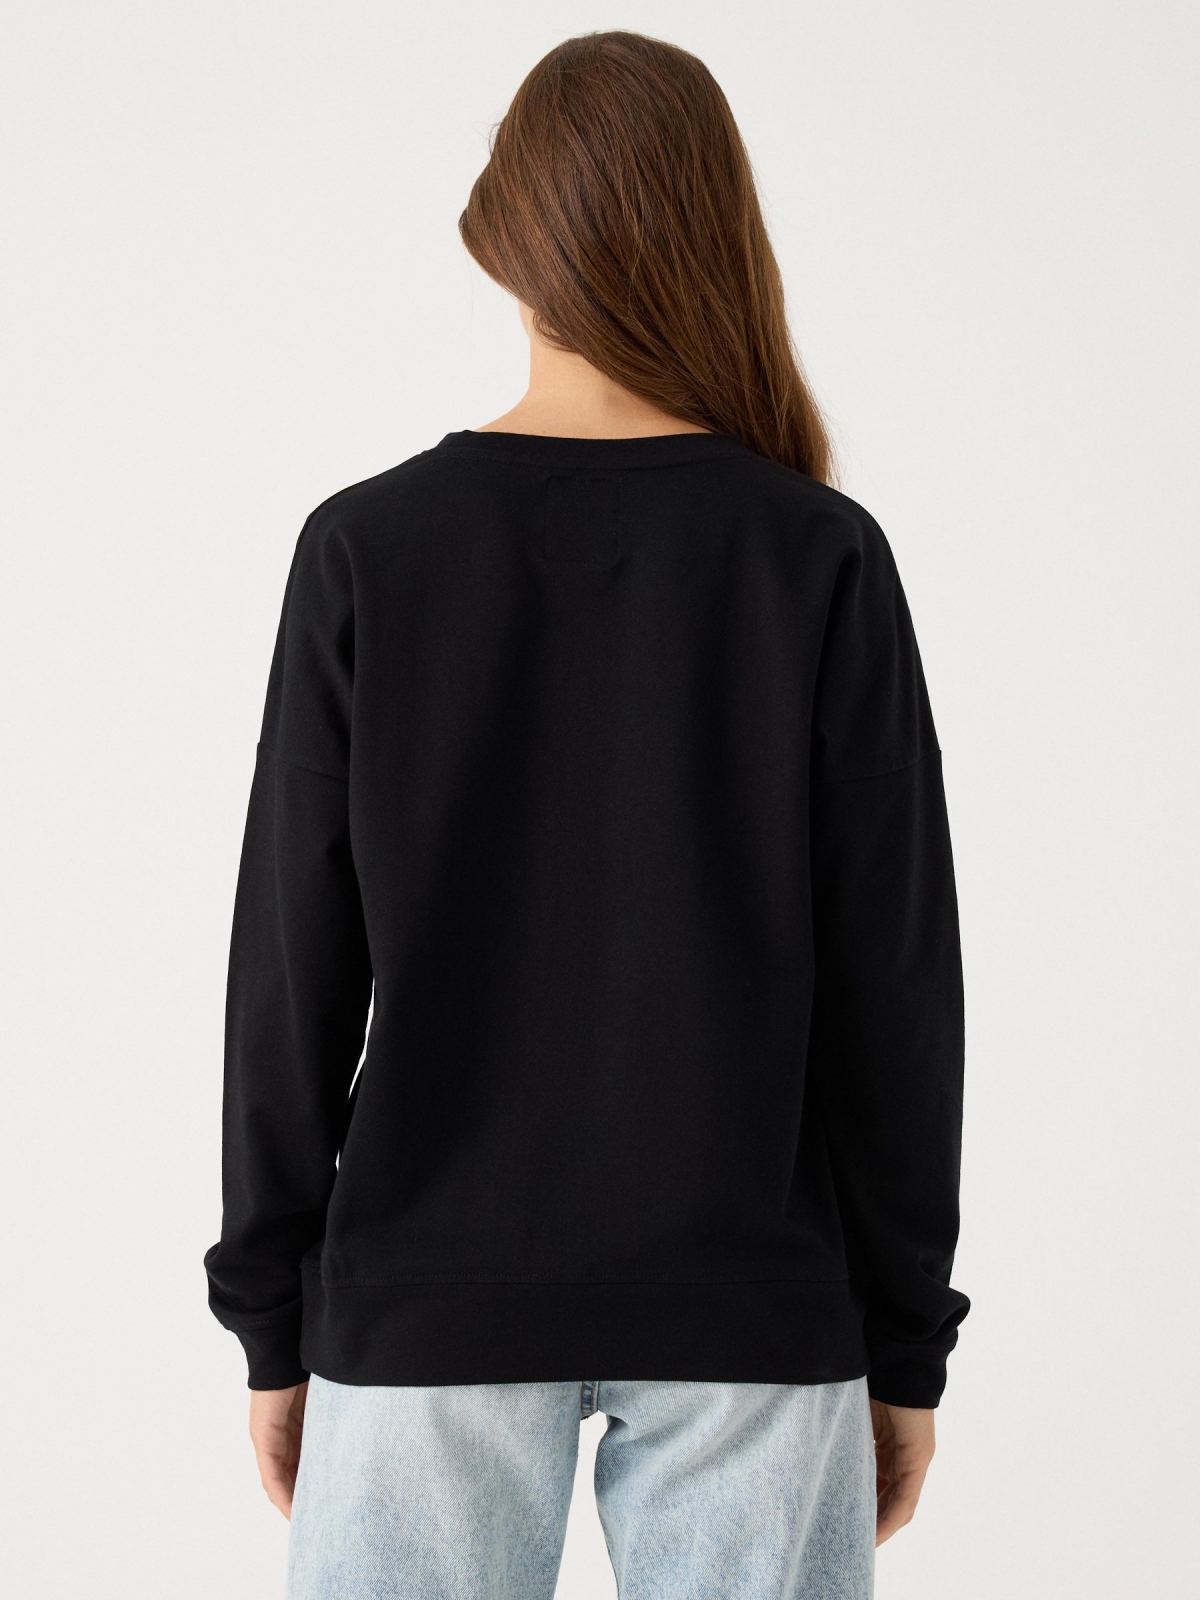 Basic round neck sweatshirt black middle back view